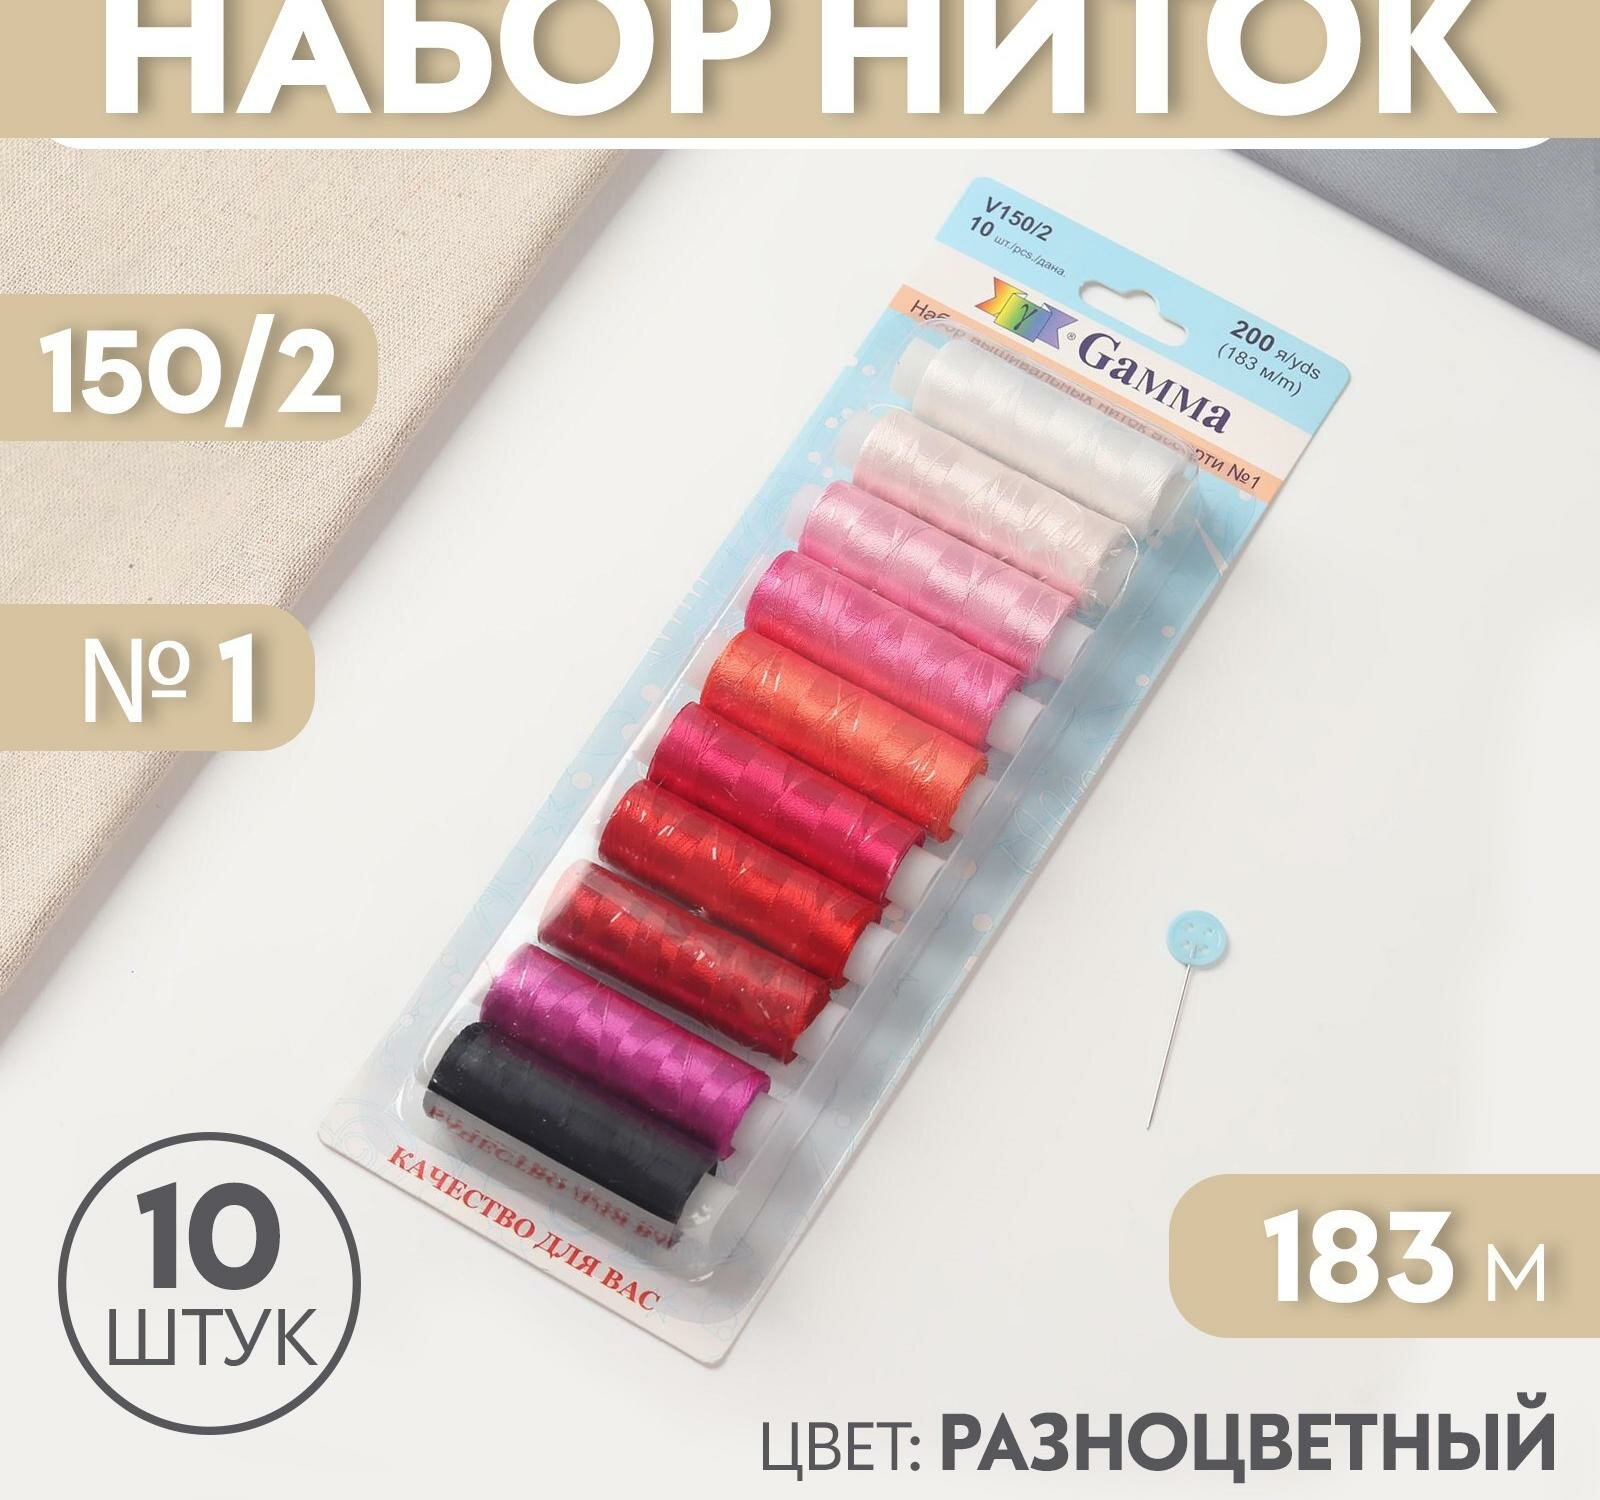 Нитки для вышивания №1, 183 м, 10 шт, цвет разноцветный